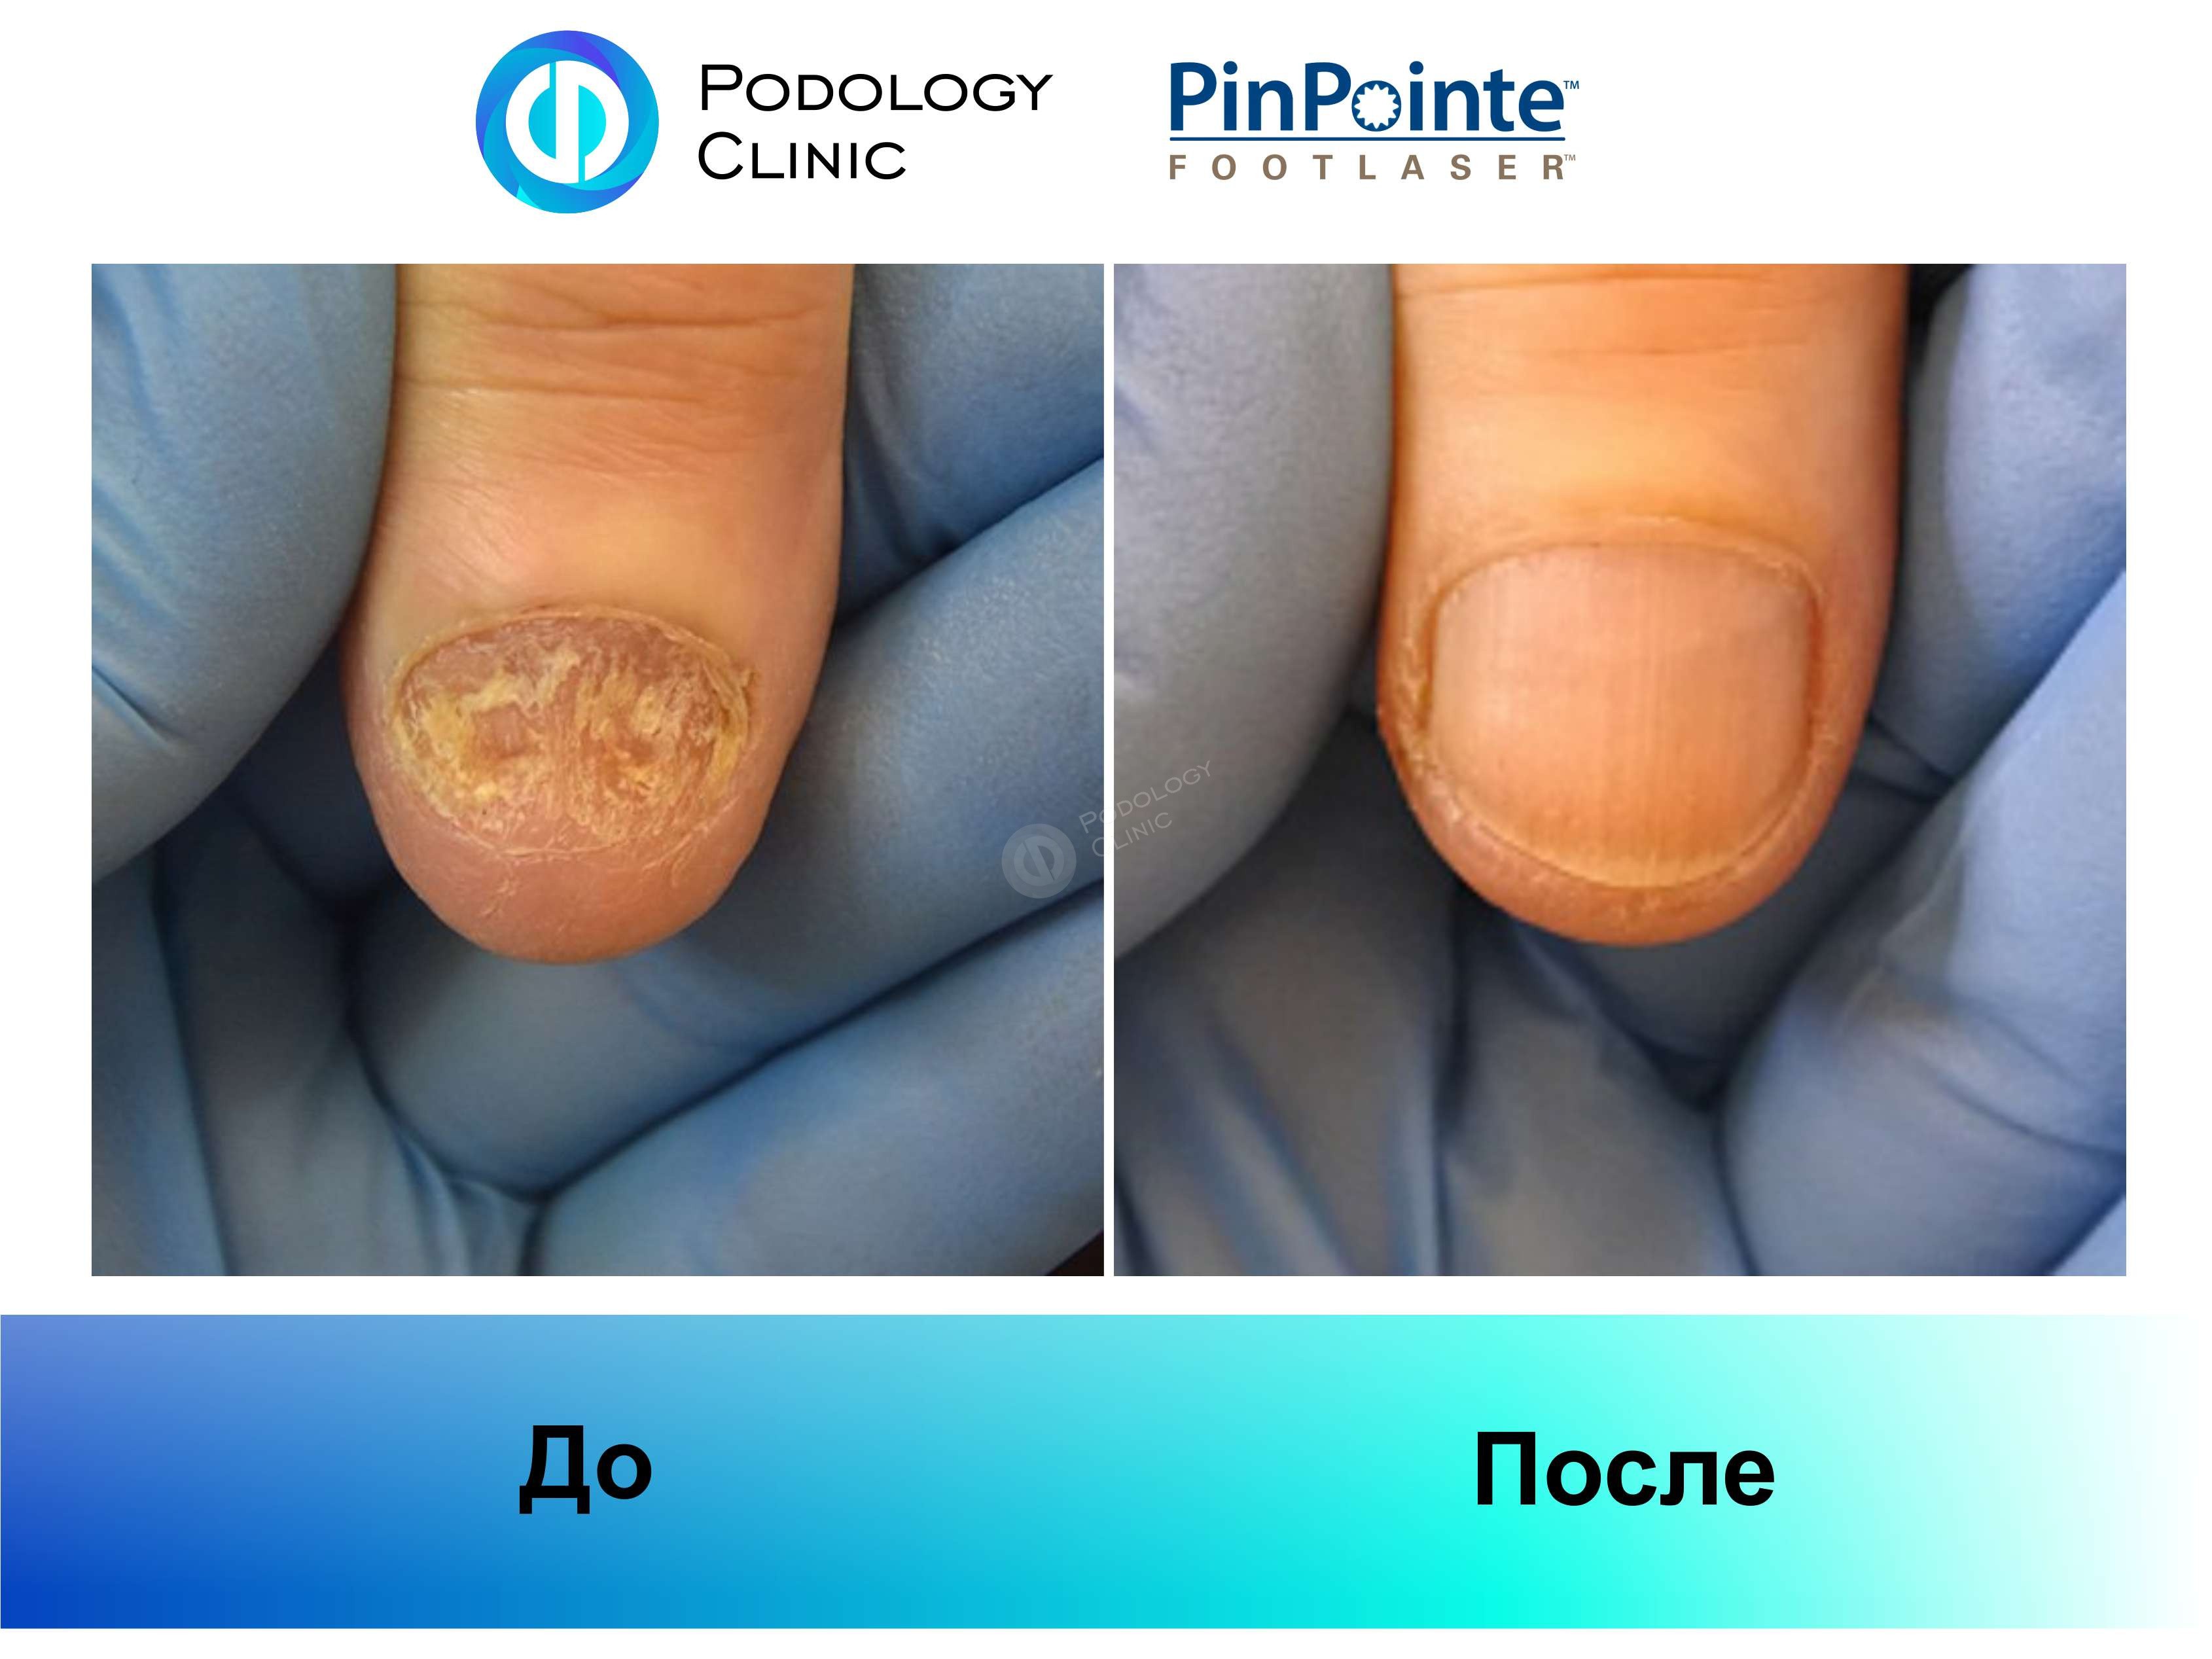 Примеры работы лазера PinPointe FootLaser в лечении онихомикоза, фото 6